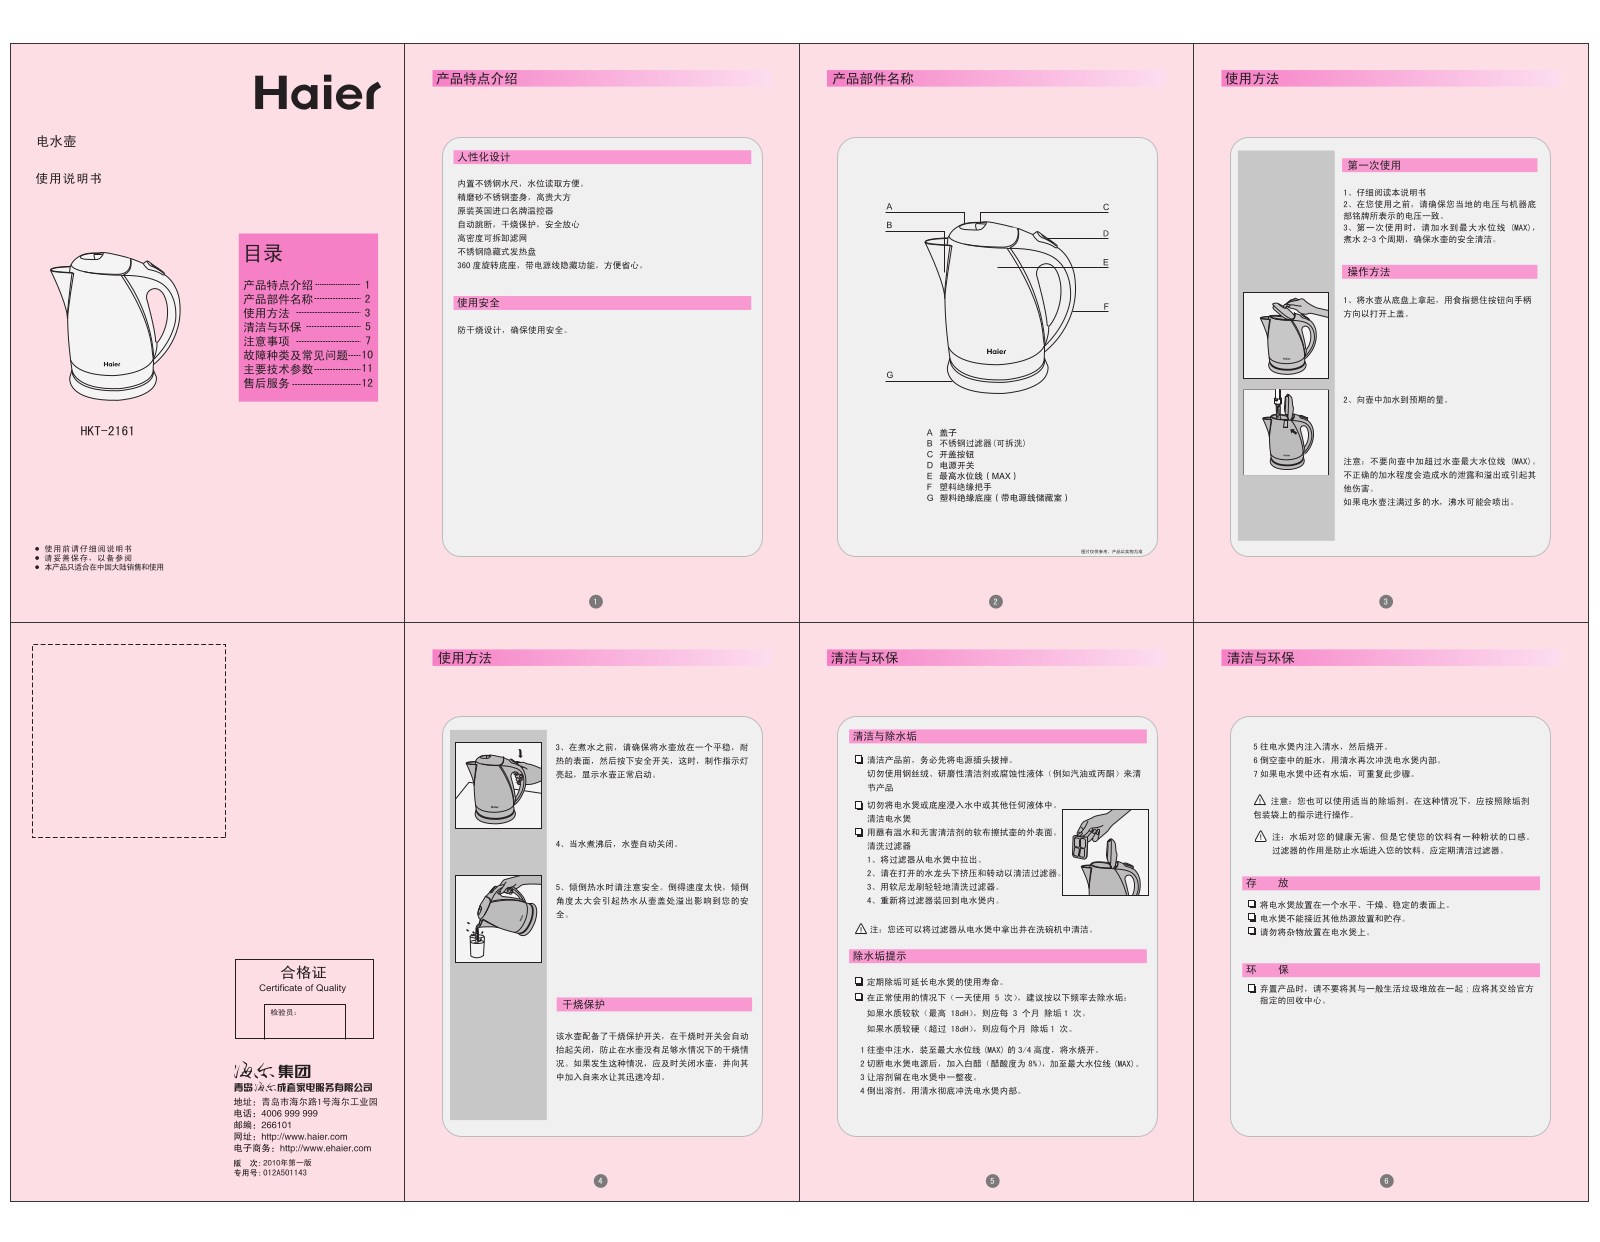 Haier HKT-2161 User Manual